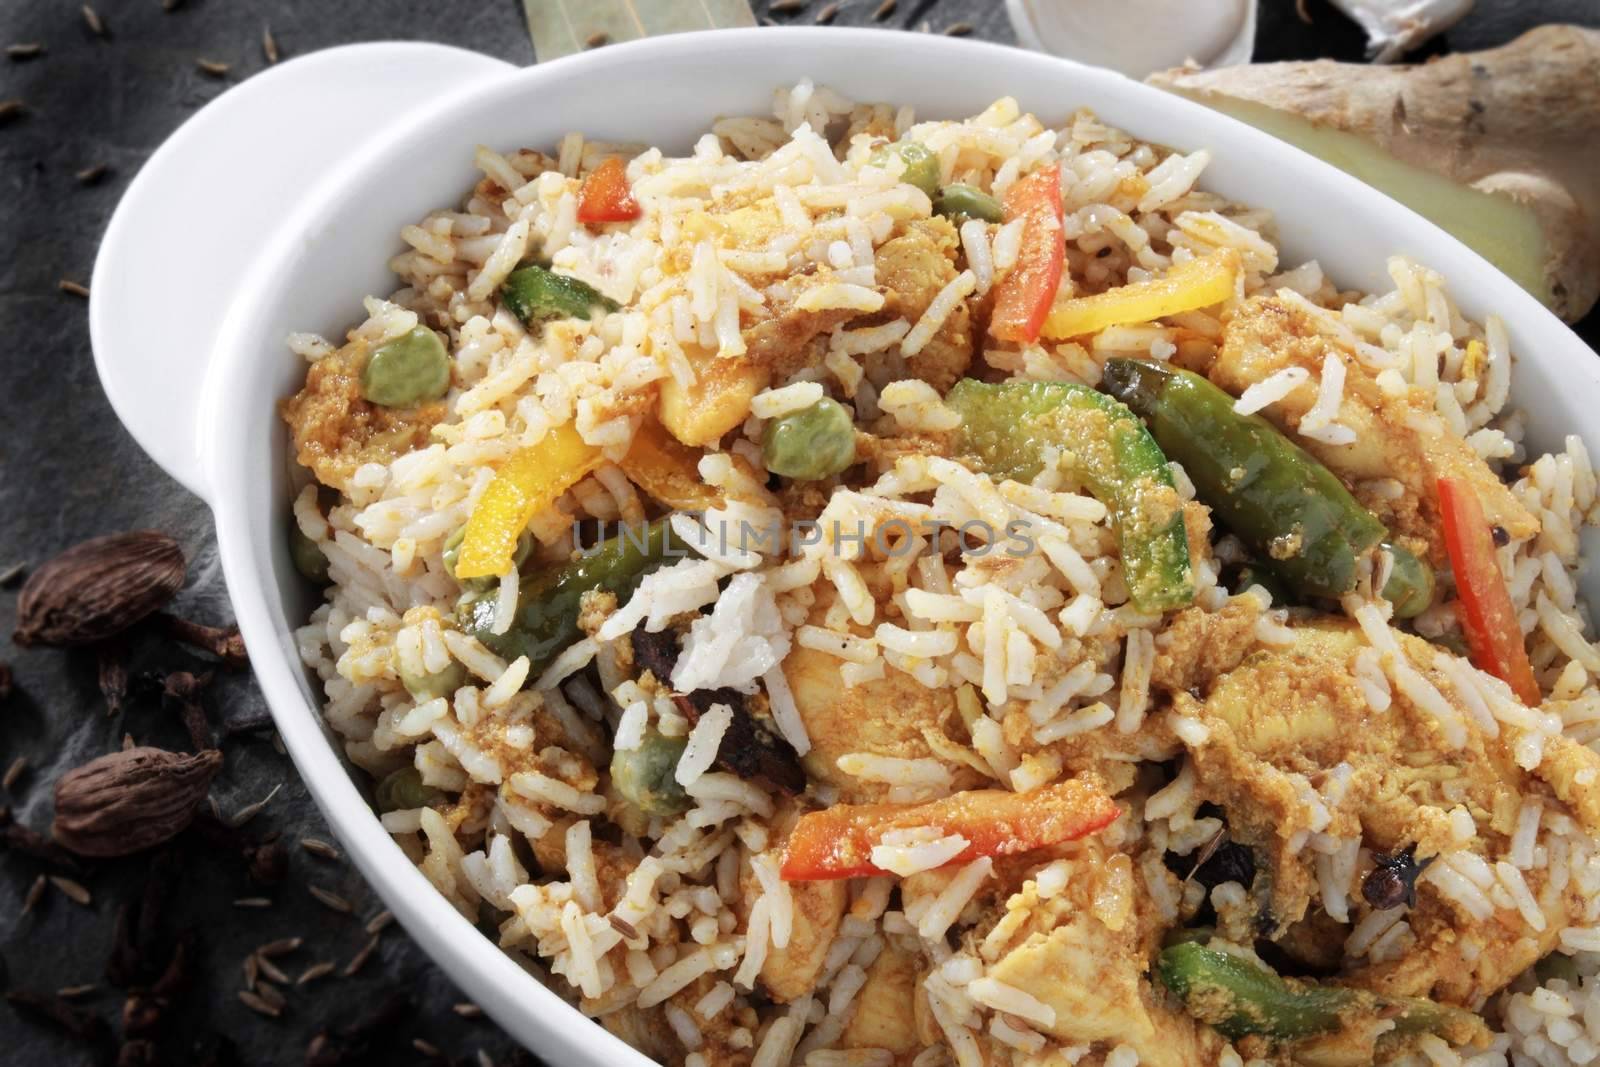 Indian biryani rice curry